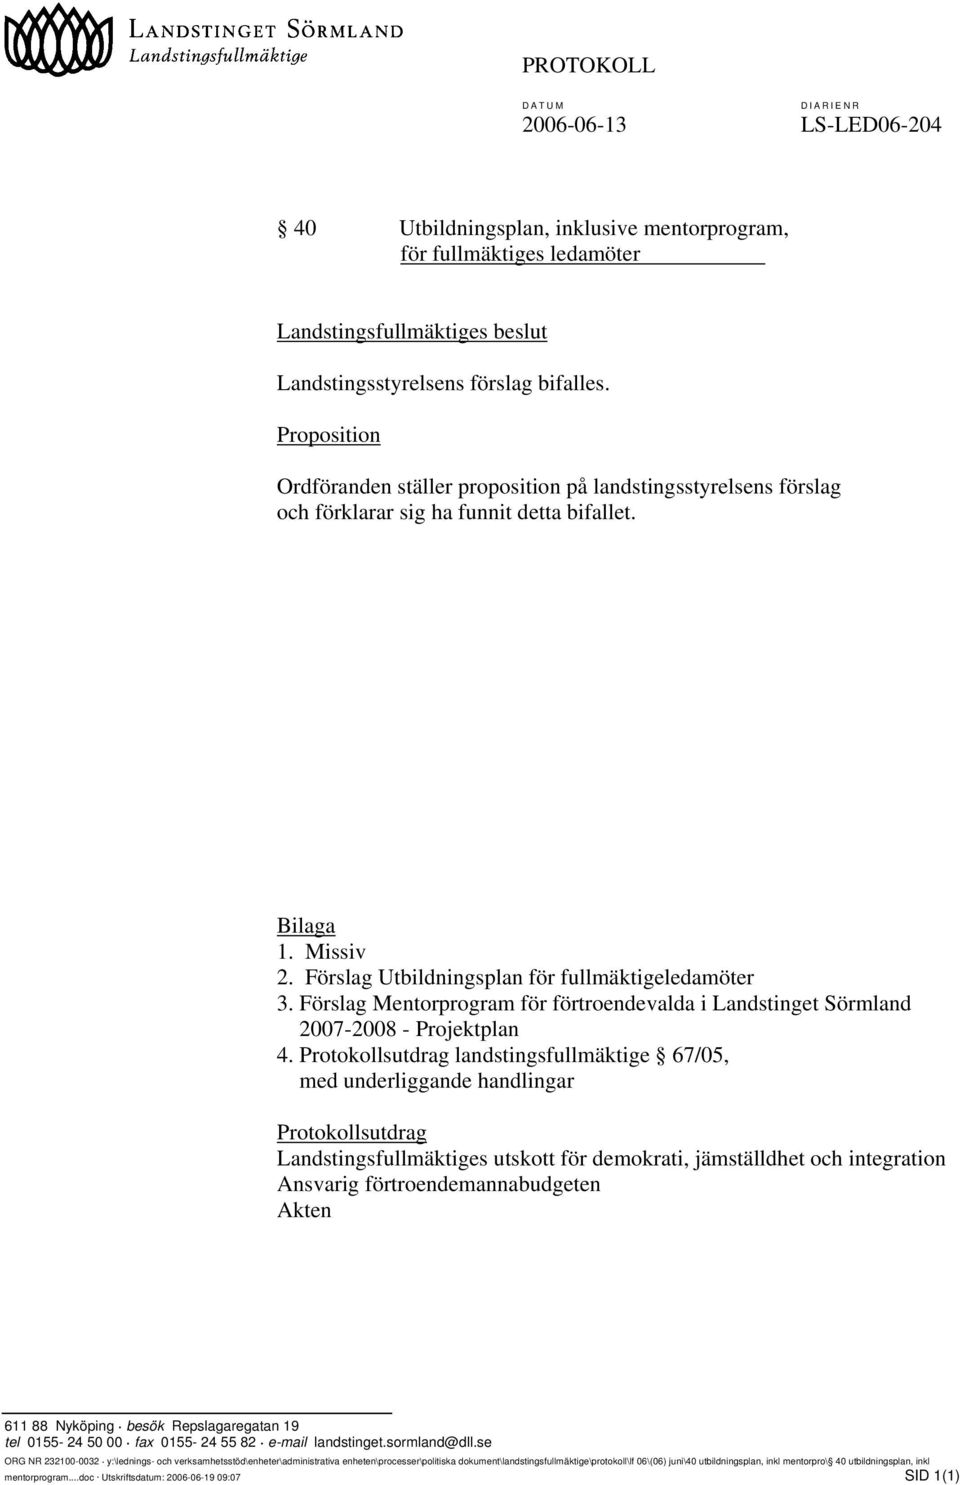 Förslag Mentorprogram för förtroendevalda i Landstinget Sörmland 2007-2008 - Projektplan 4.